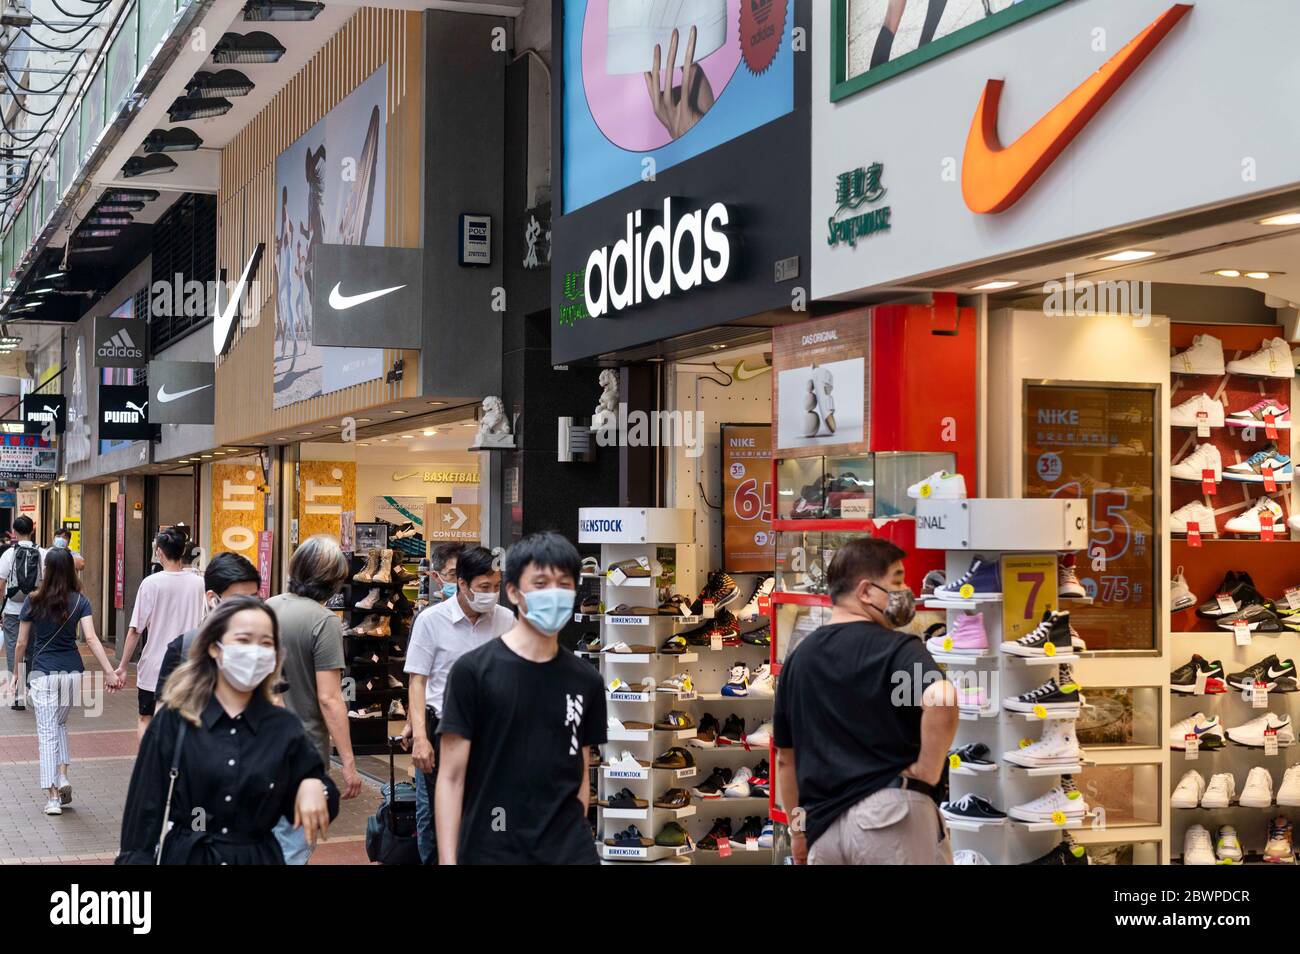 Hong Kong, Chine. 29 mai 2020. Les logos Adidas, Puma et Nike des marques  multinationales de vêtements de sport sont visibles dans un magasin de Hong  Kong. Crédit: Budrul Chukrut/SOPA Images/ZUMA Wire/Alay